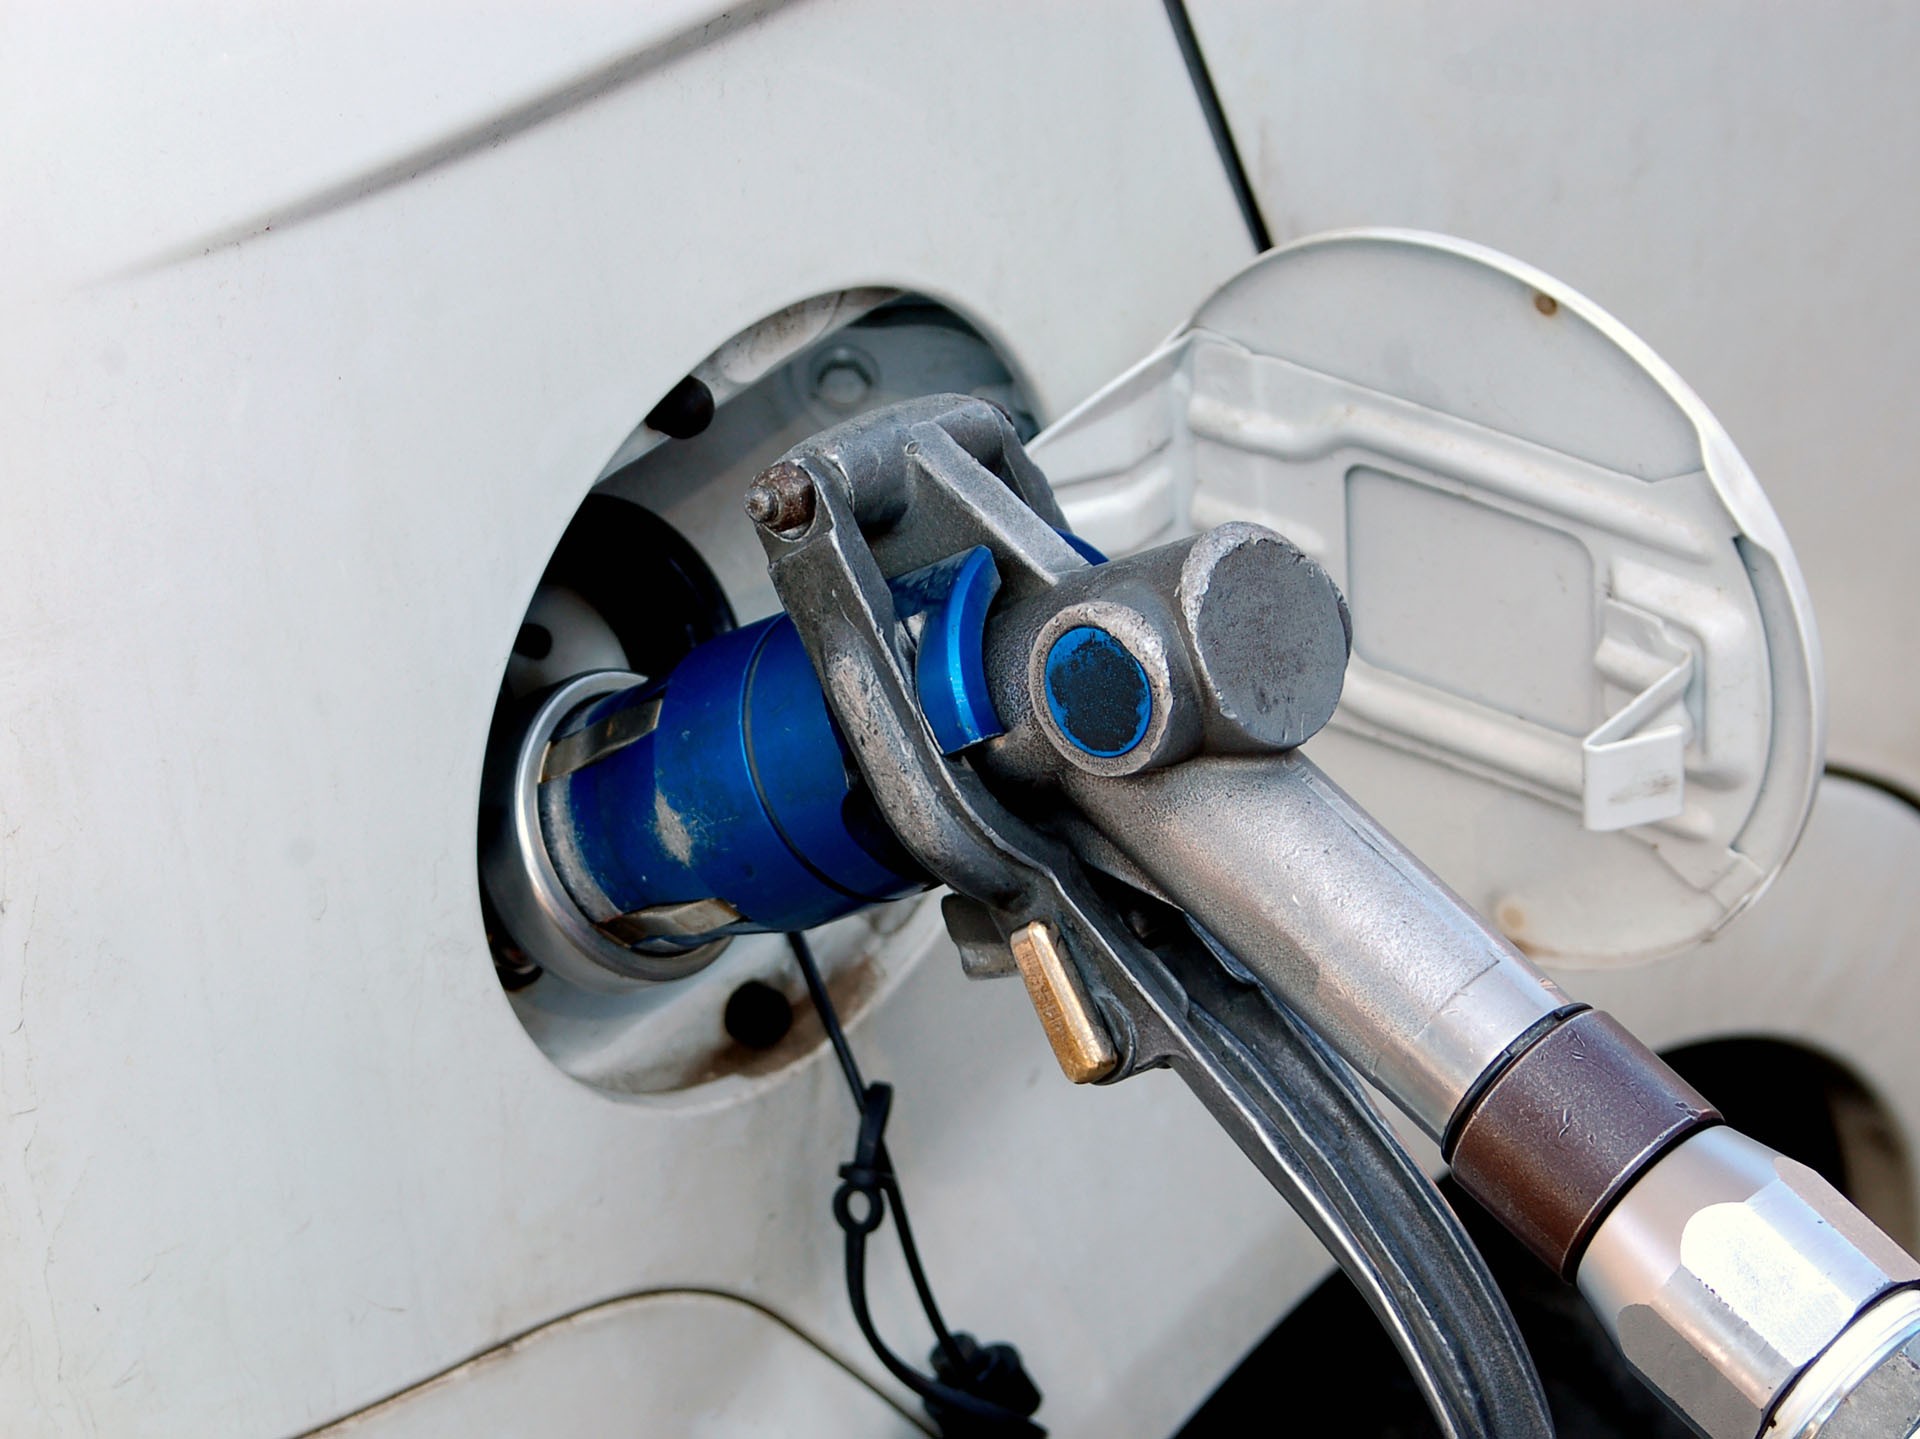 Обратно на бензин: почему перевод машины на газ превращается из выгоды в абсурд